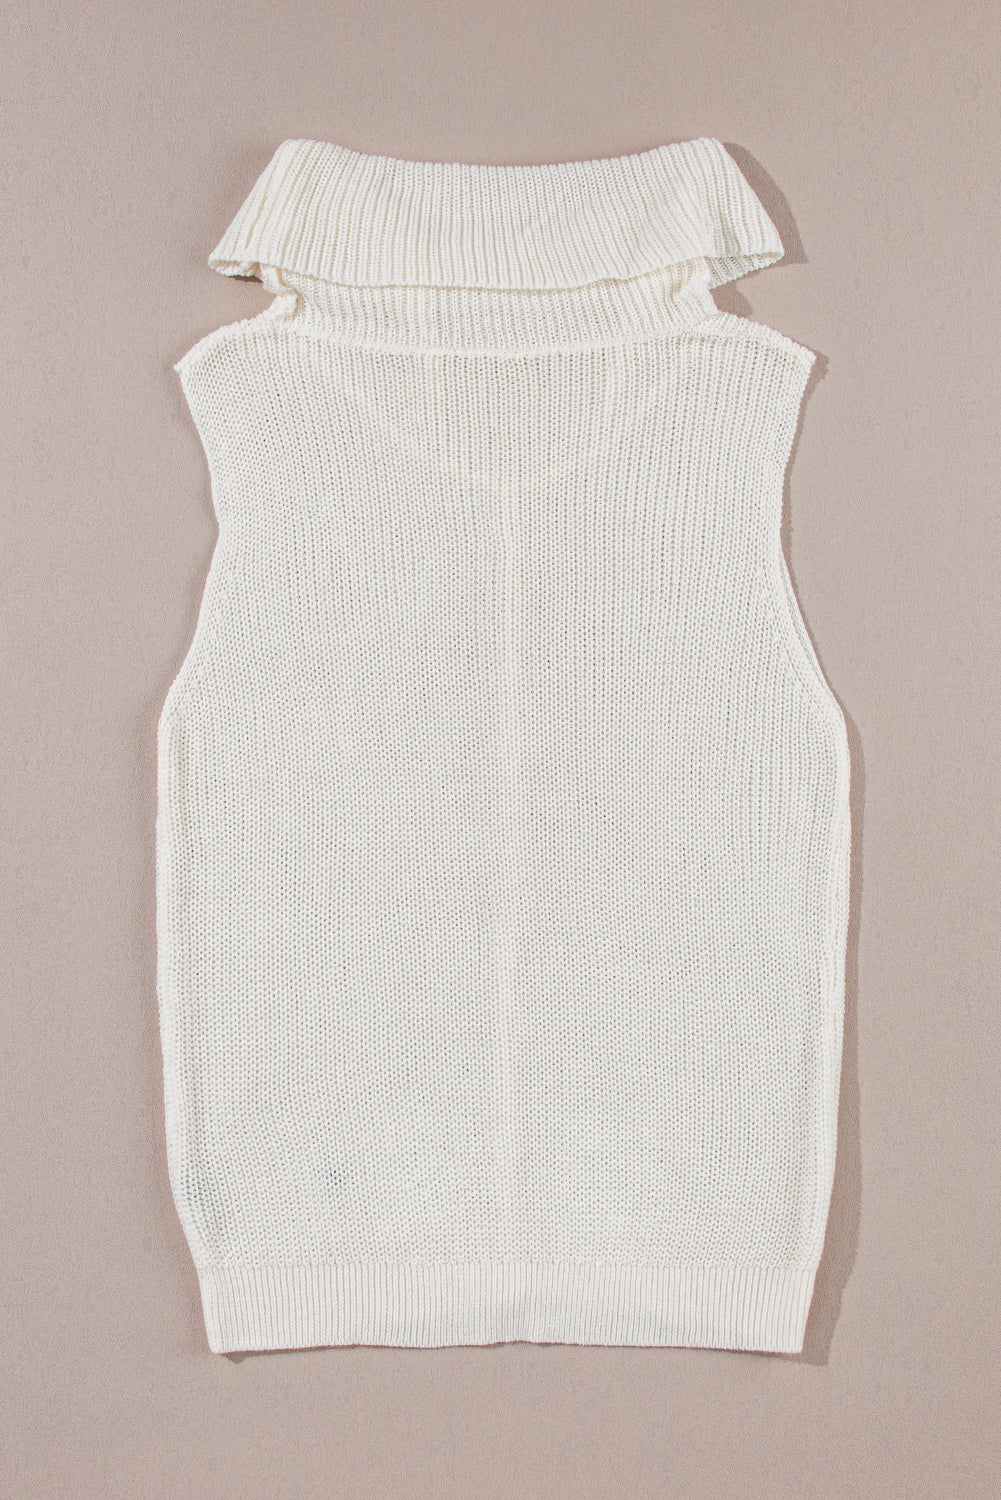 Gilet maglione bianco con collo ad anello e cucitura centrale